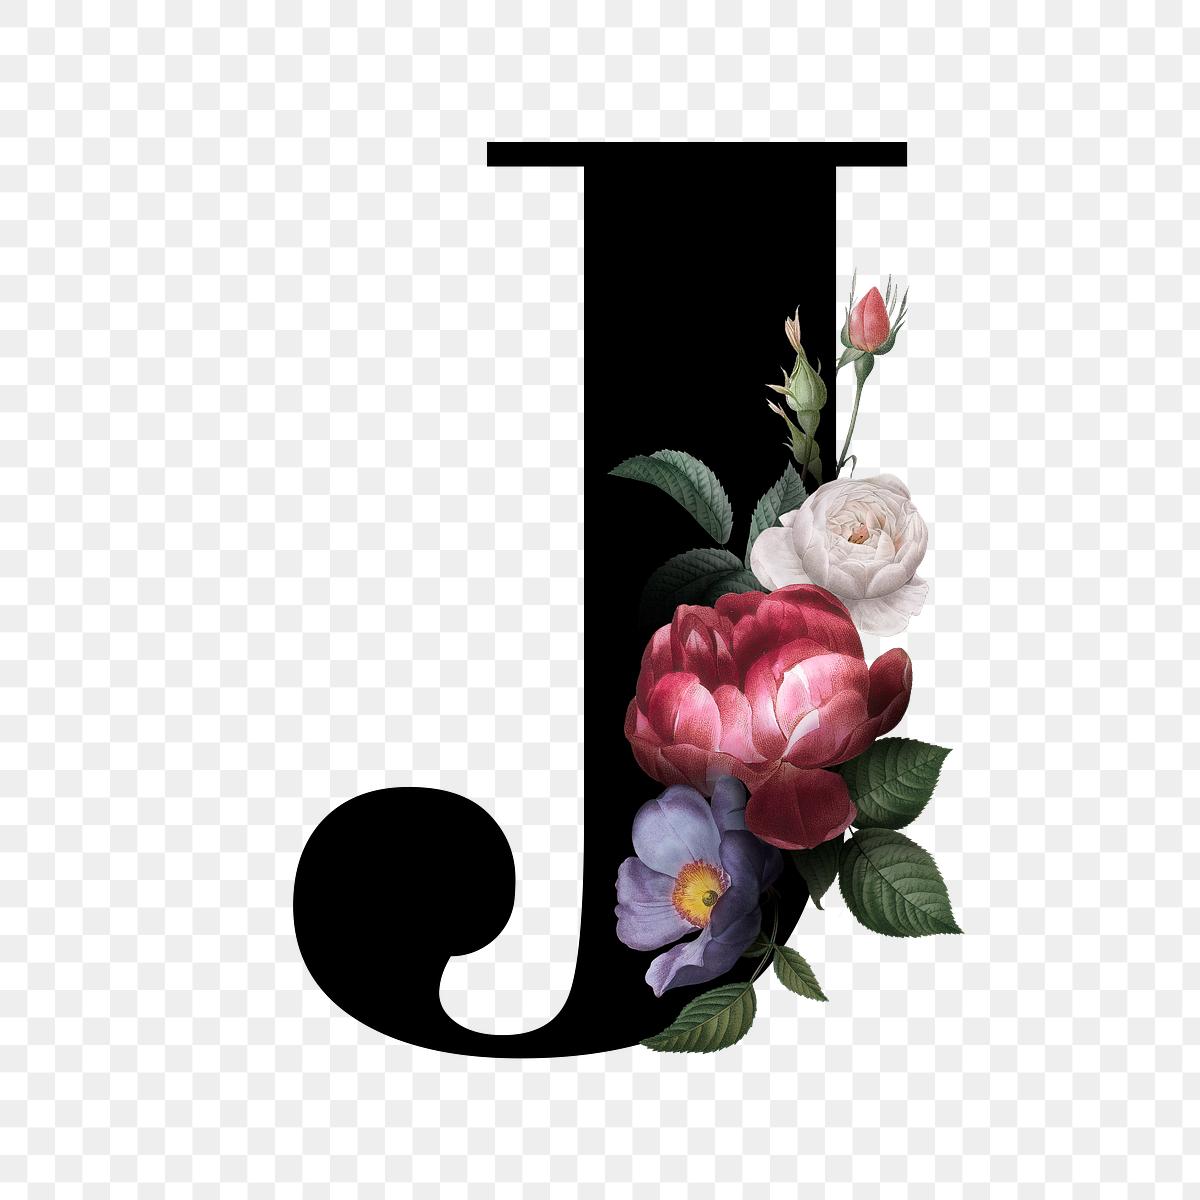 Download Floral letter J font | Free stock illustration - 583179